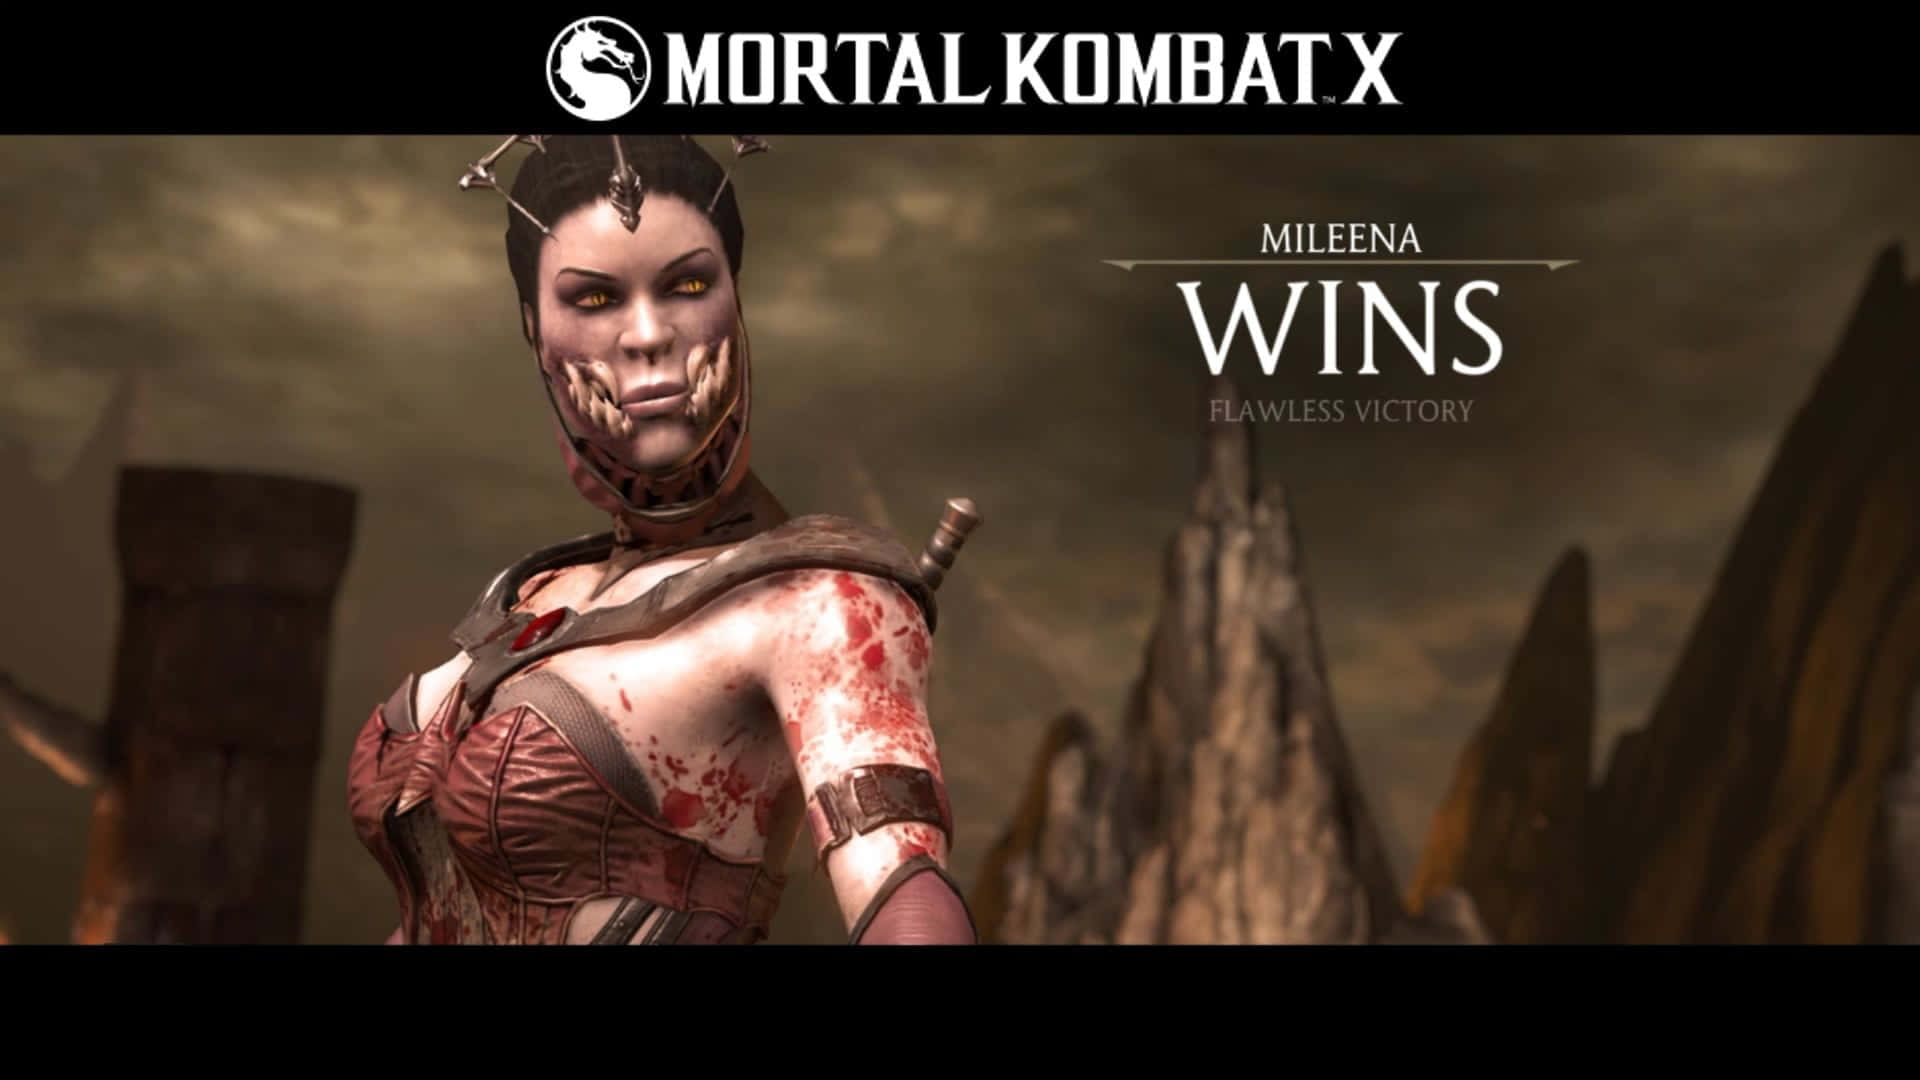 Deadly Beauty - Mortal Kombat's Mileena in Action Wallpaper